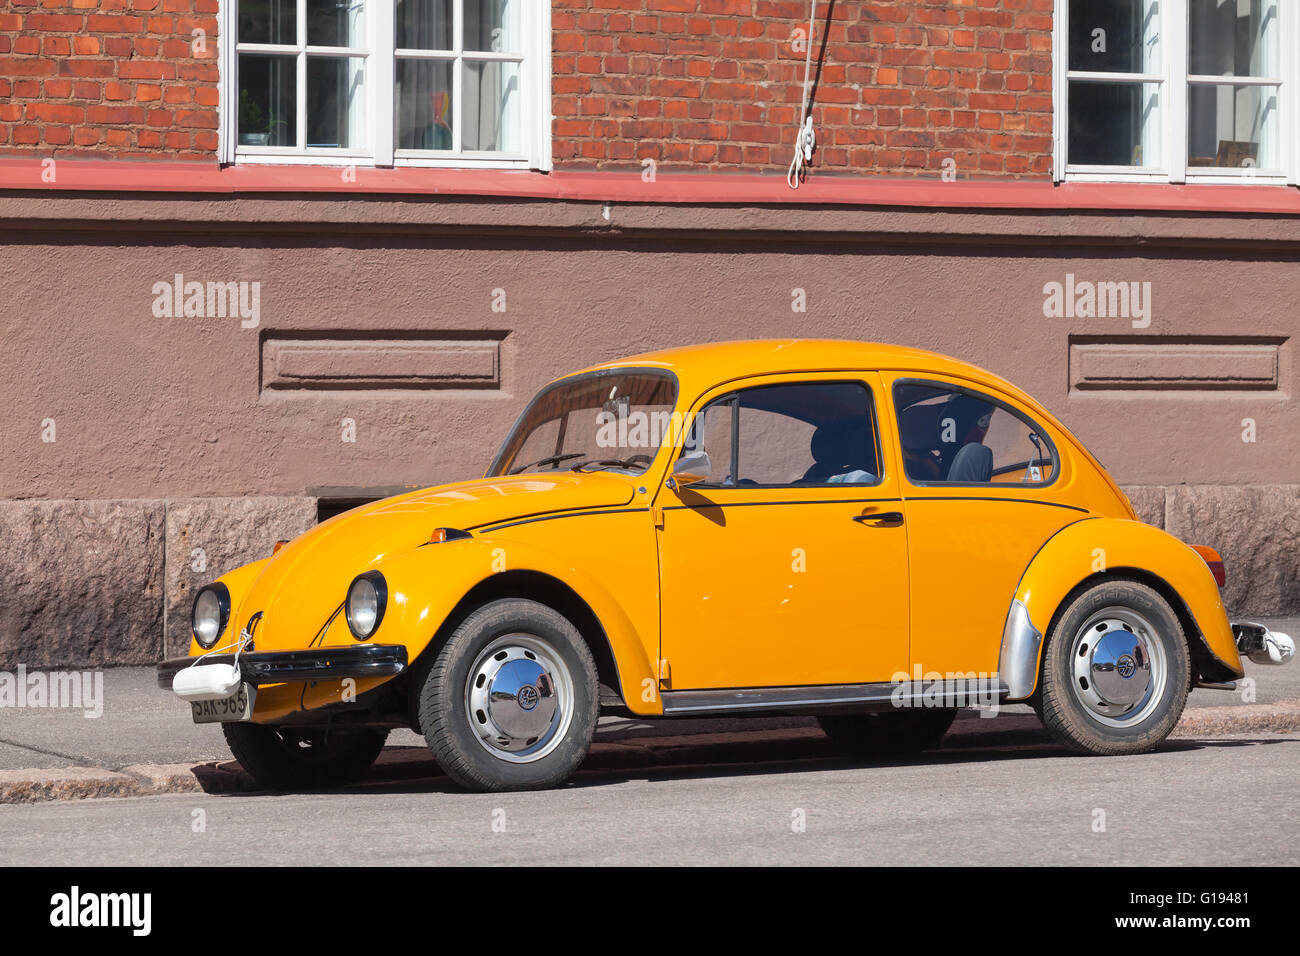 Helsinki, Finnland - 7. Mai 2016: Alten gelben VW Käfer an einem Straßenrand geparkt ist Stockfoto